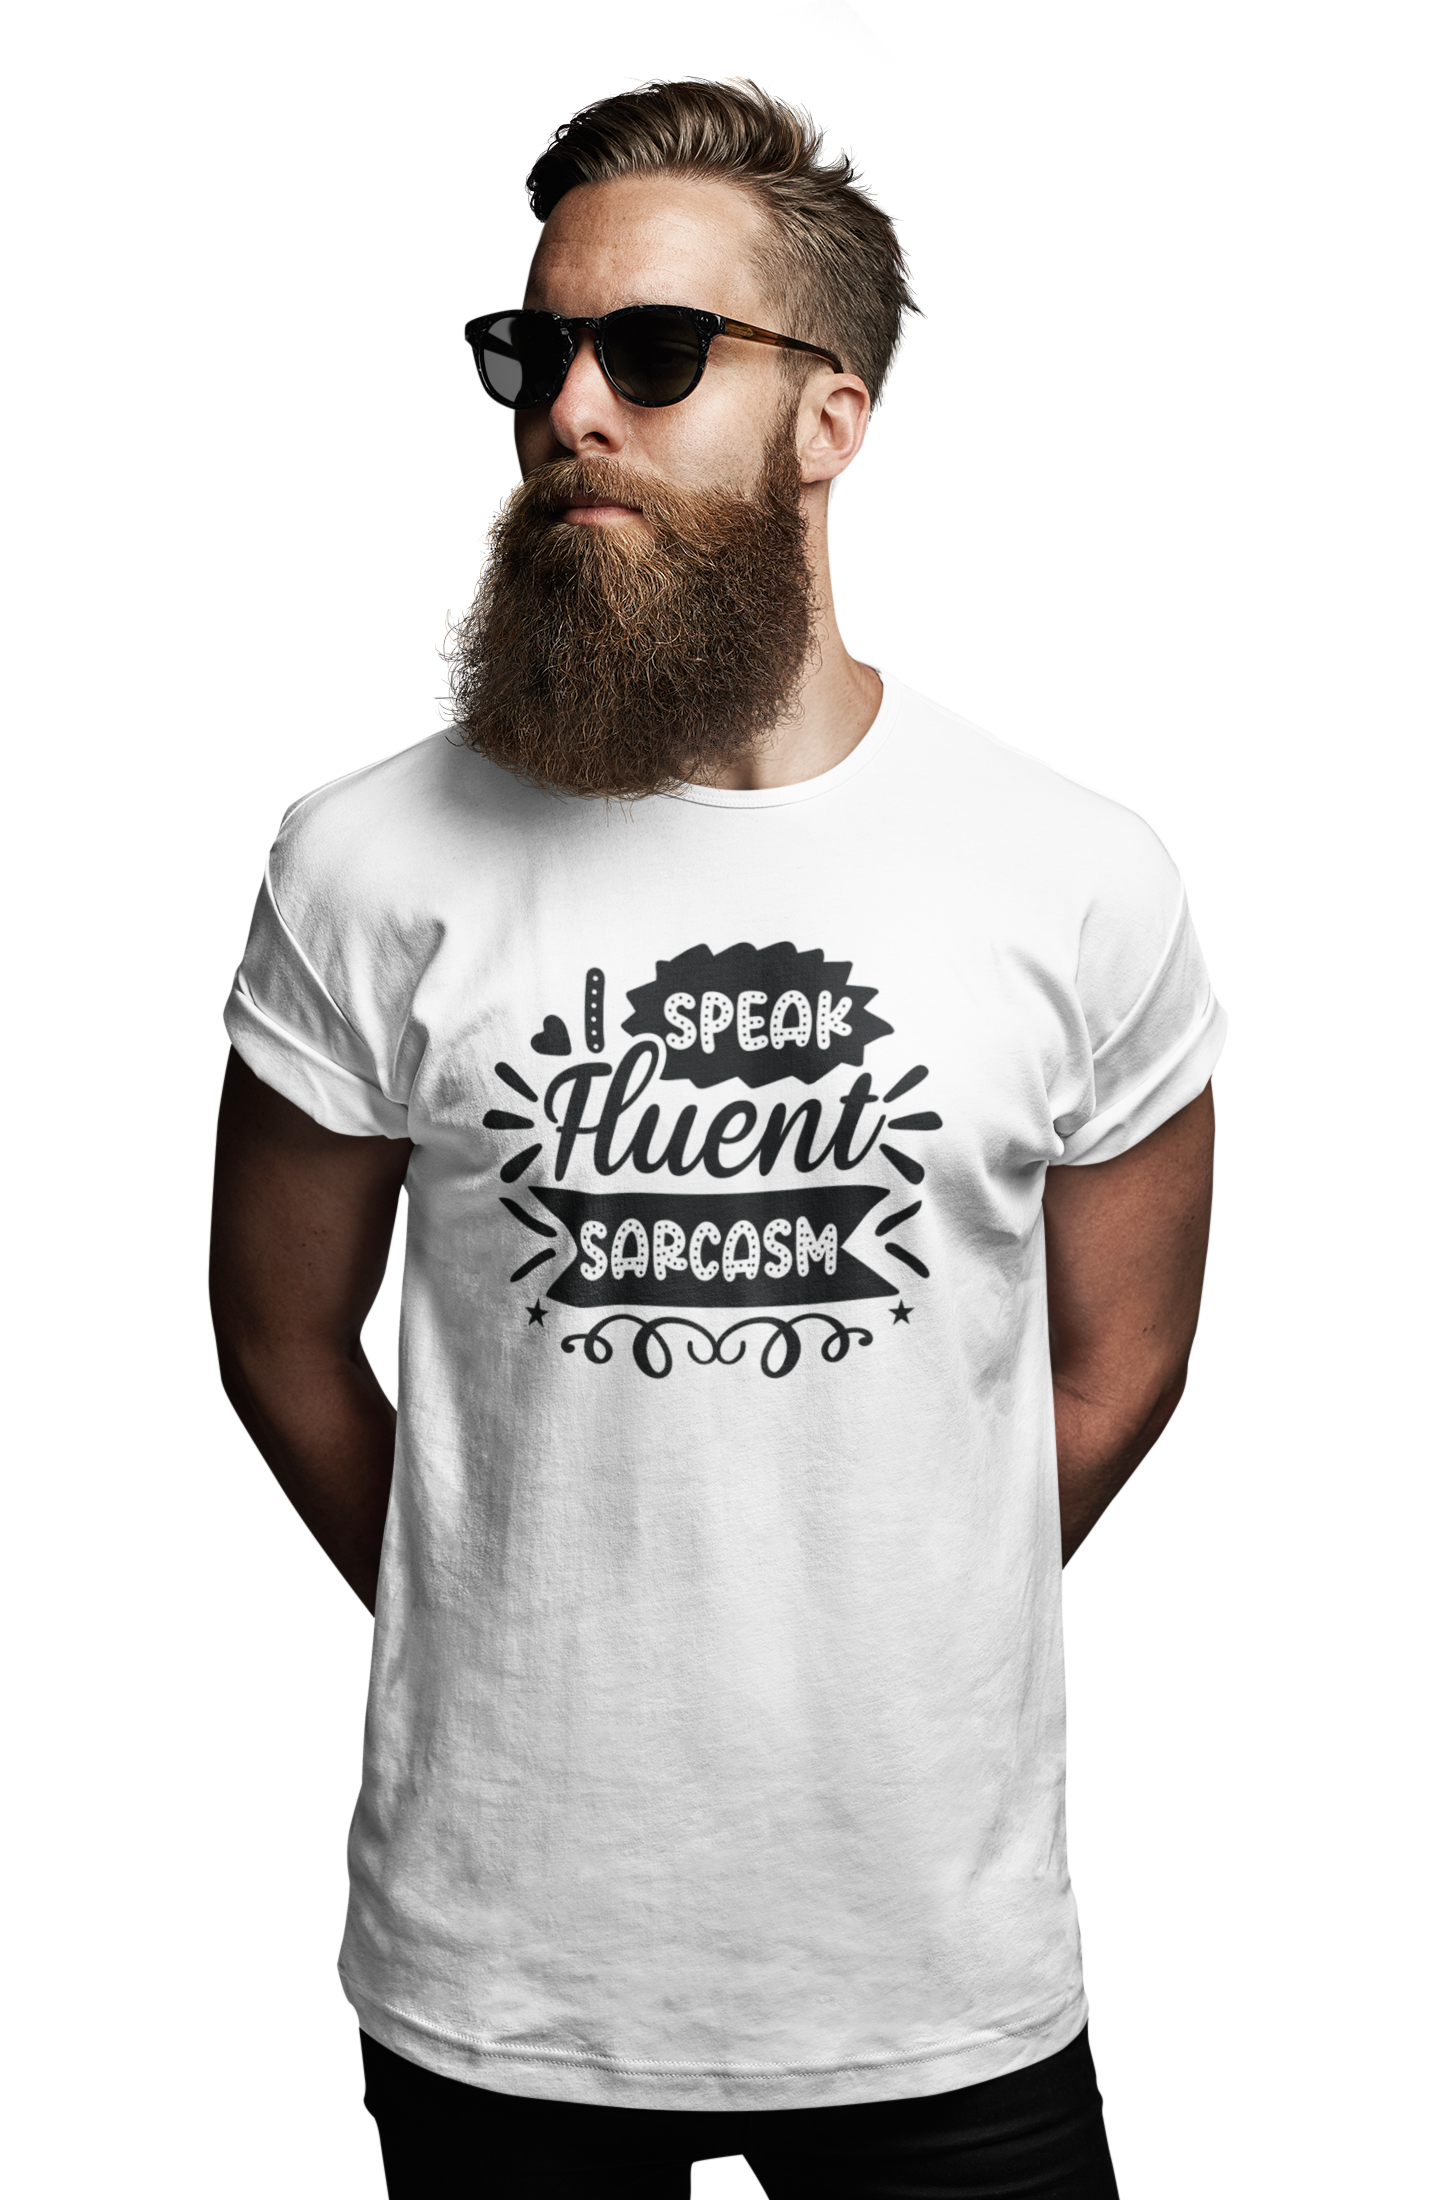 TNH - Men's Round Neck Tshirt - I Speak Fluent Sarcasm